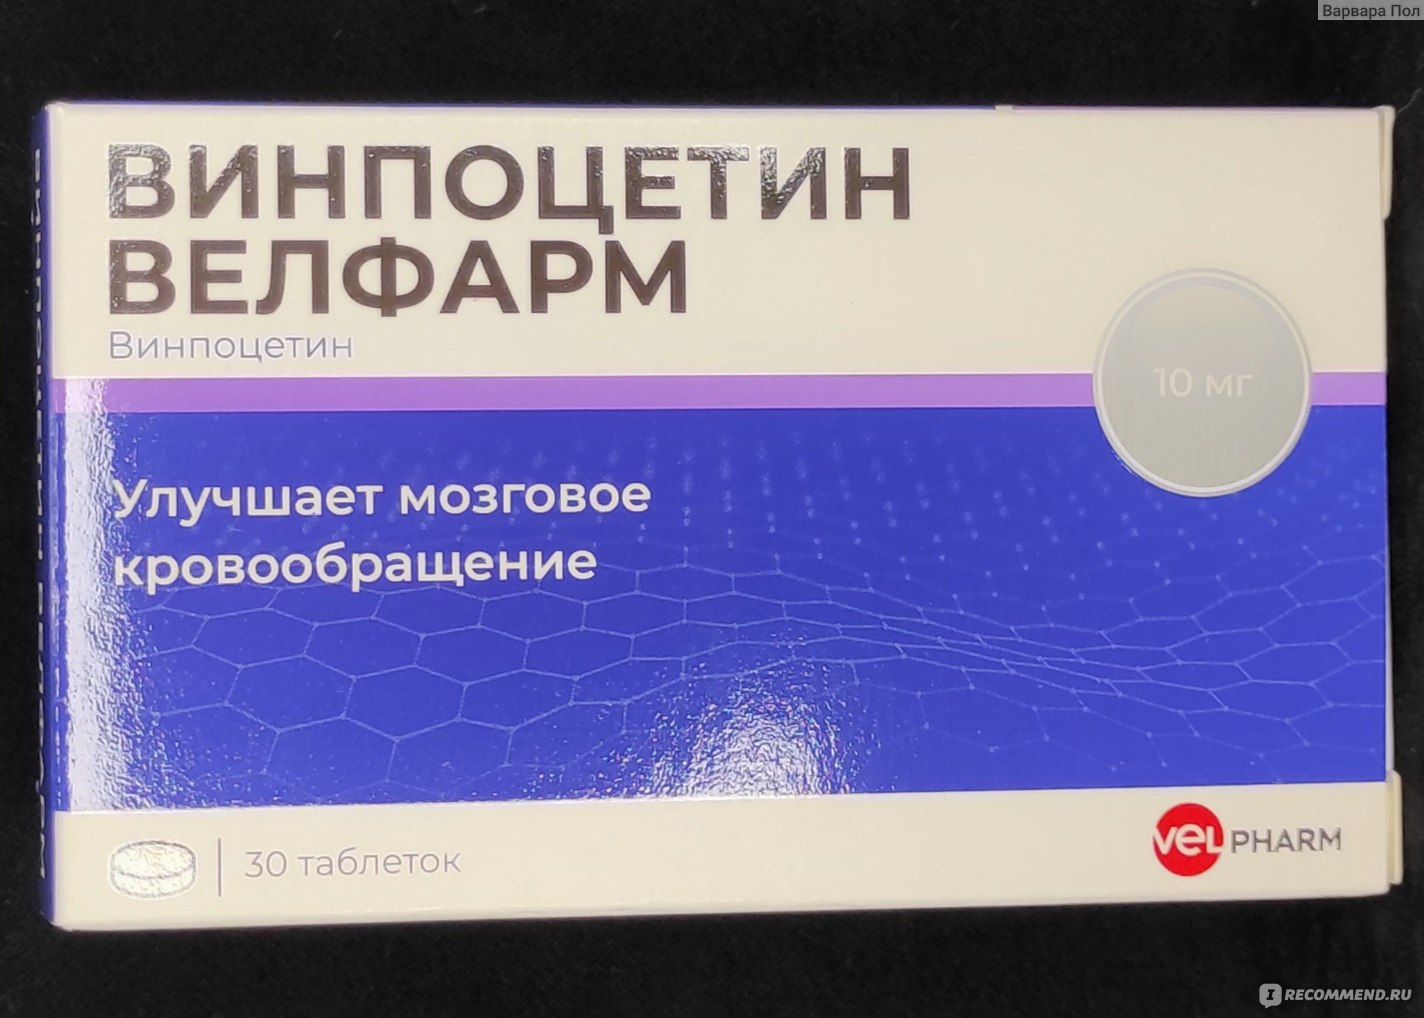 Ноотропное средство Велфарм Винпоцетин - ««Винпоцетин» 10 мг от .